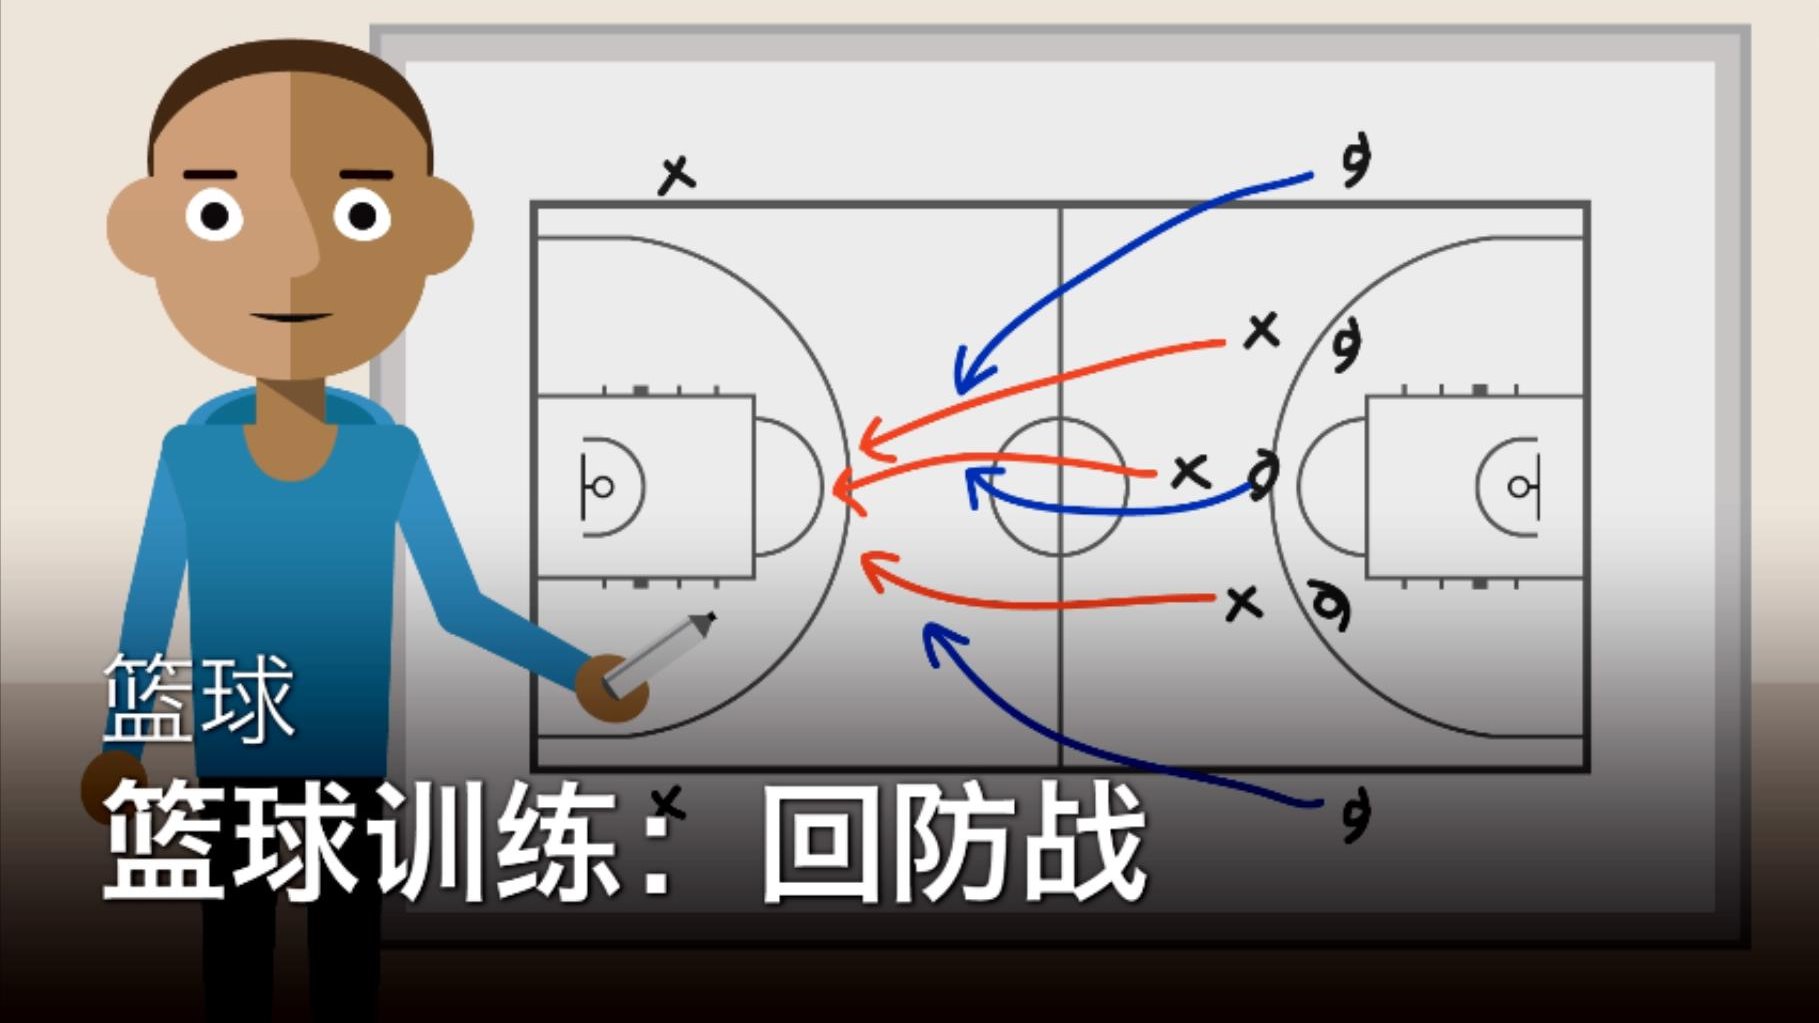 【篮球基本规则】浅析篮球规则的演变对篮球技战术发展的影响